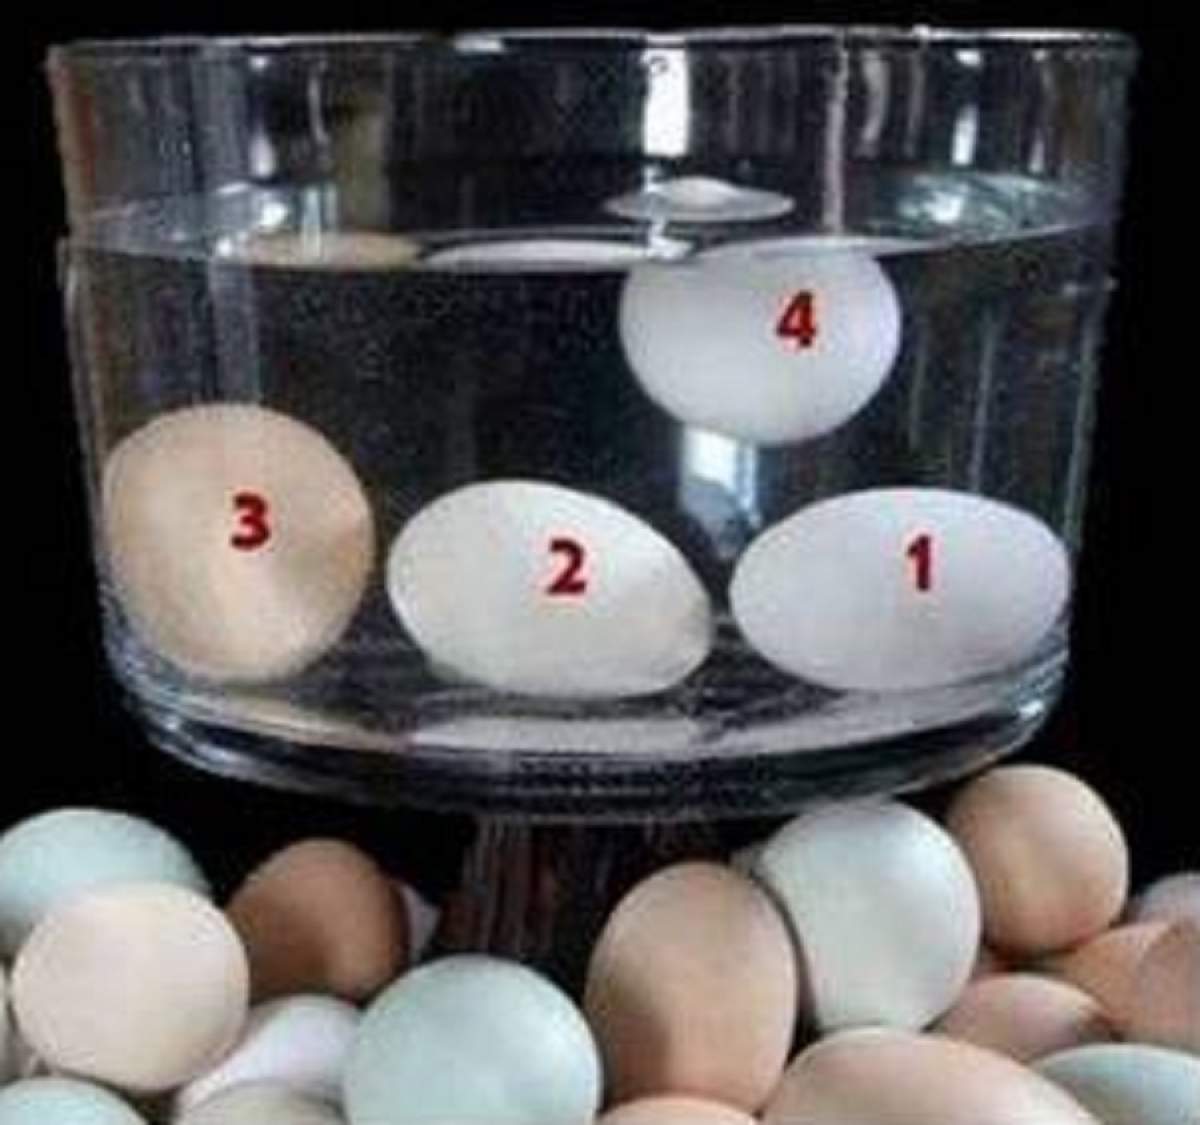 Ştiaţi că... oul pe care îl puneţi la fiert este vechi şi nu este bun pentru consum dacă pluteşte la suprafaţa apei?